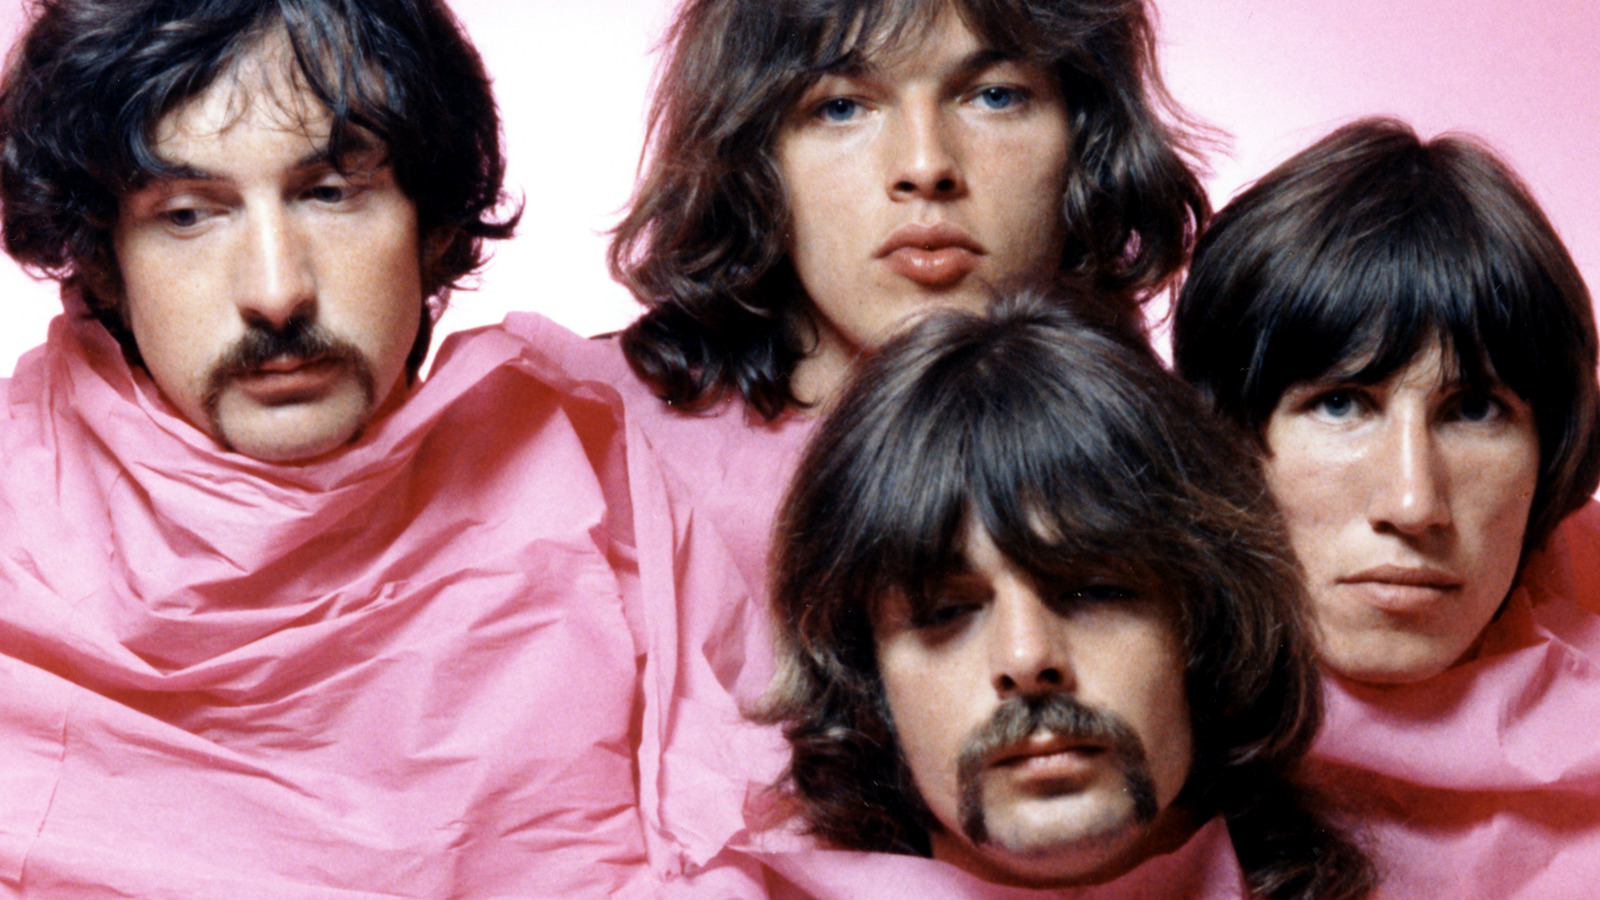 ฟังเพลง “Another Brick in the Wall” ของ Pink Floyd ที่ได้จากการถอดรหัสคลื่นสมองของมนุษย์